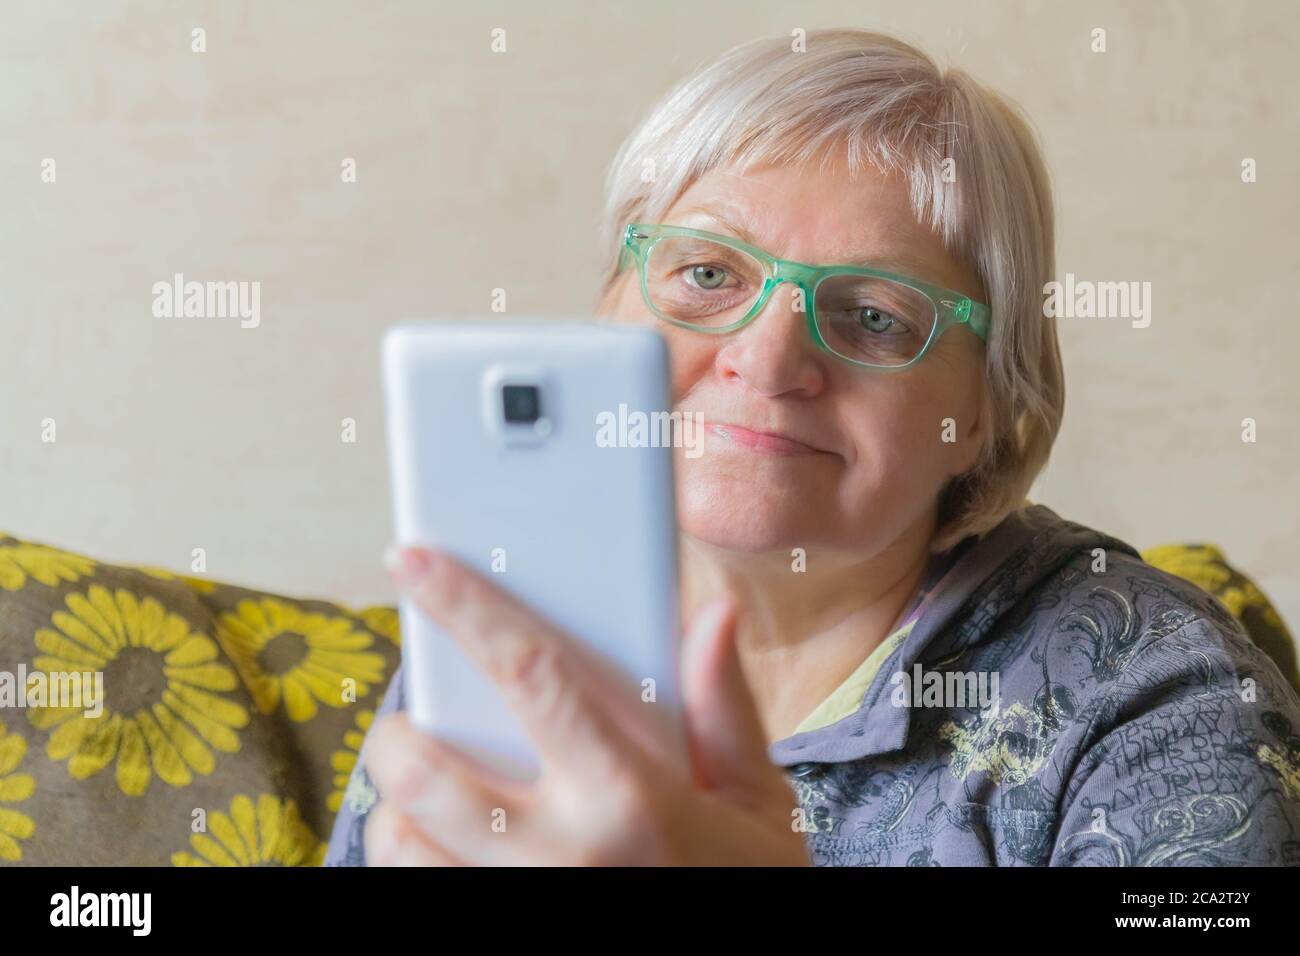 Ältere Frau, die ein Mobiltelefon für die Verbindung mit Verwandten verwendet. Ältere Frau nimmt Selfie. Lady mit Smartphone in der Hand zu Hause. Weiblich, die das Telefon benutzt Stockfoto